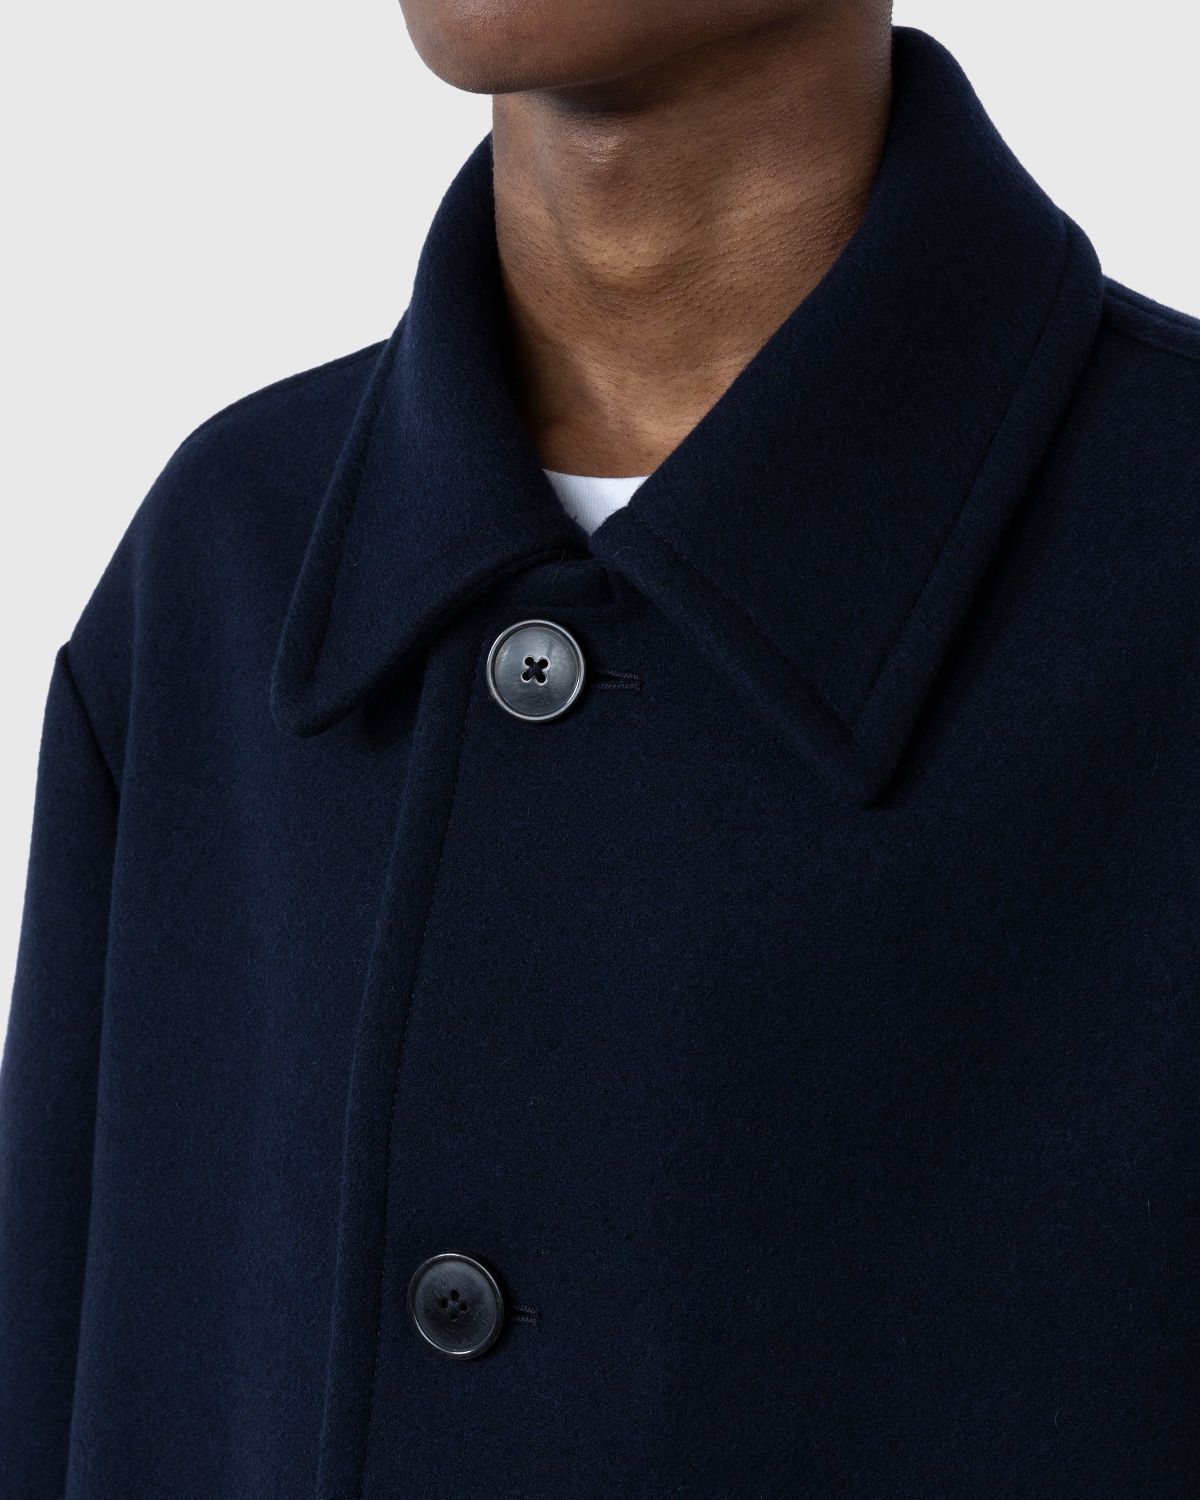 Dries van Noten – Ronnor Workwear Jacket Navy | Highsnobiety Shop